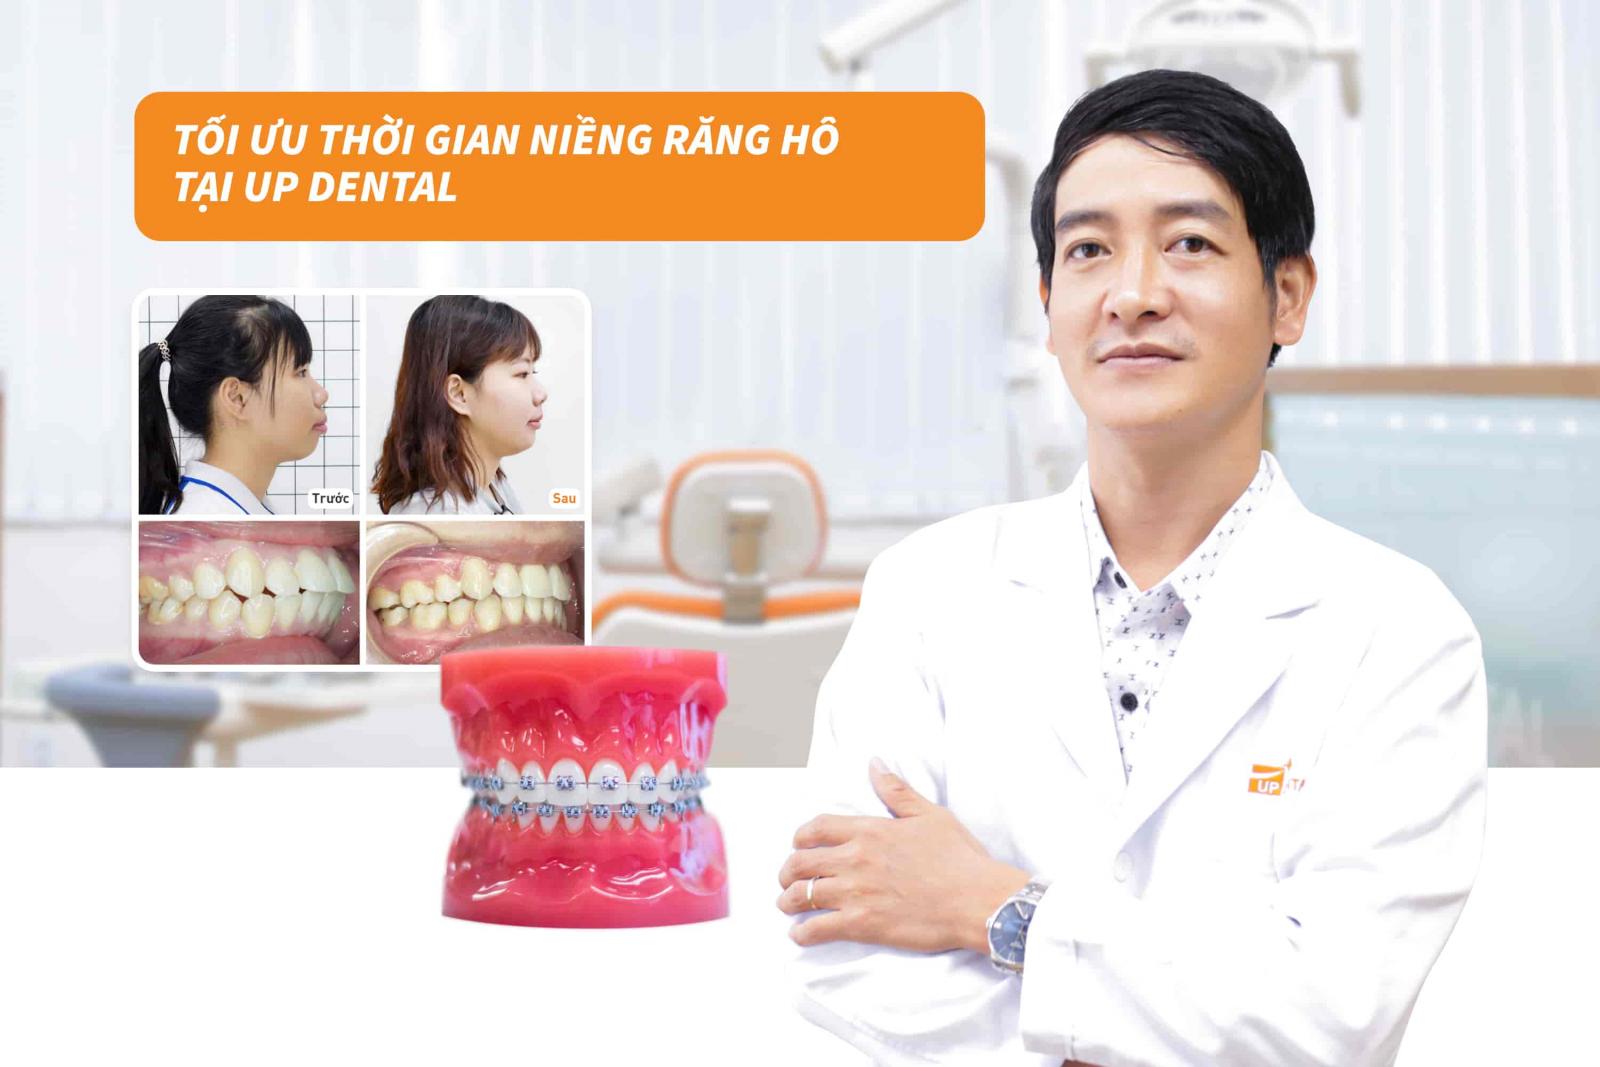 Tối ưu thời gian niềng răng hô tại Up Dental 